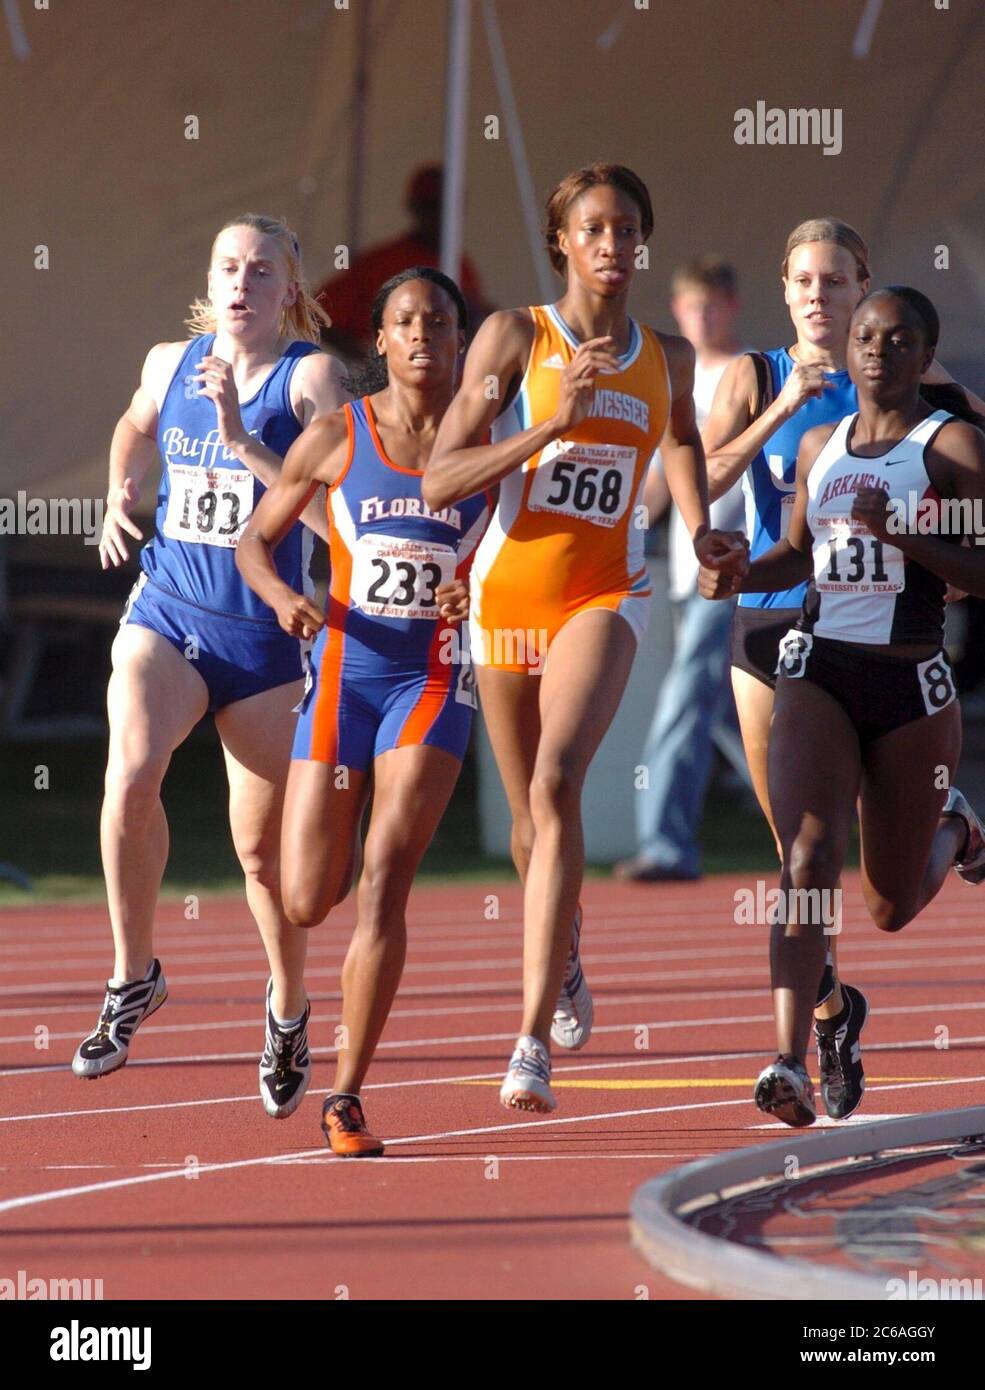 Austin, Texas, États-Unis, juin 2004 : les femmes courent la courbe tout en participant à la course de 800 mètres à la National Collegiate Athletic Association (NCAA) Division I Outdoor Track & Field Championships. ©Bob Daemmrich Banque D'Images